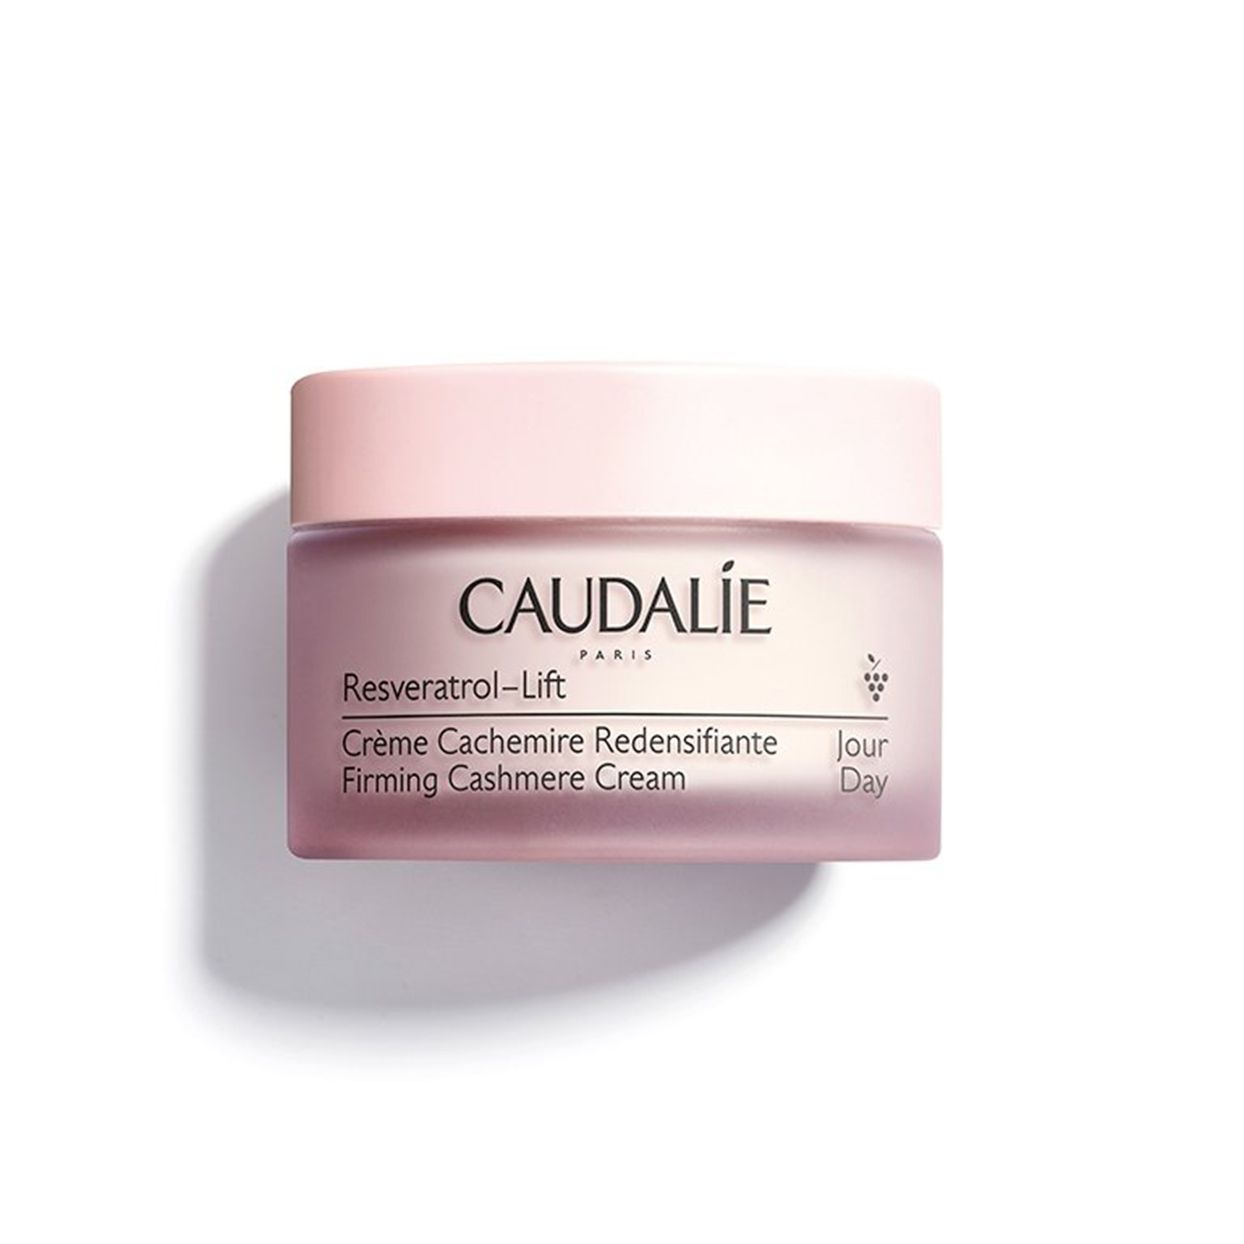 Caudalie Resveratrol Lift Firming Cashmeere Cream